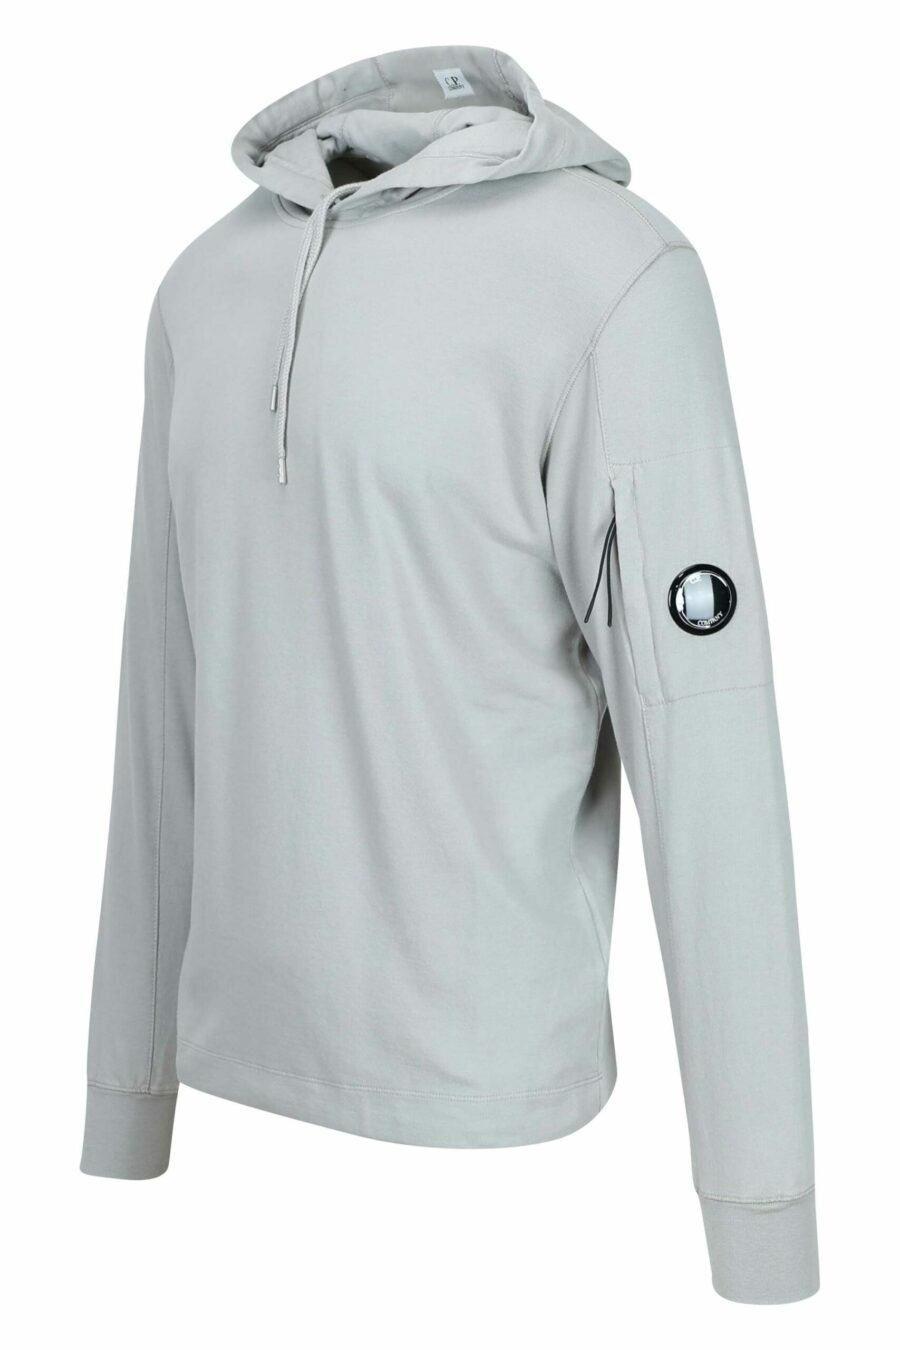 Sweat à capuche gris avec lentille mini-logo dans la poche - 7620943681031 1 à l'échelle